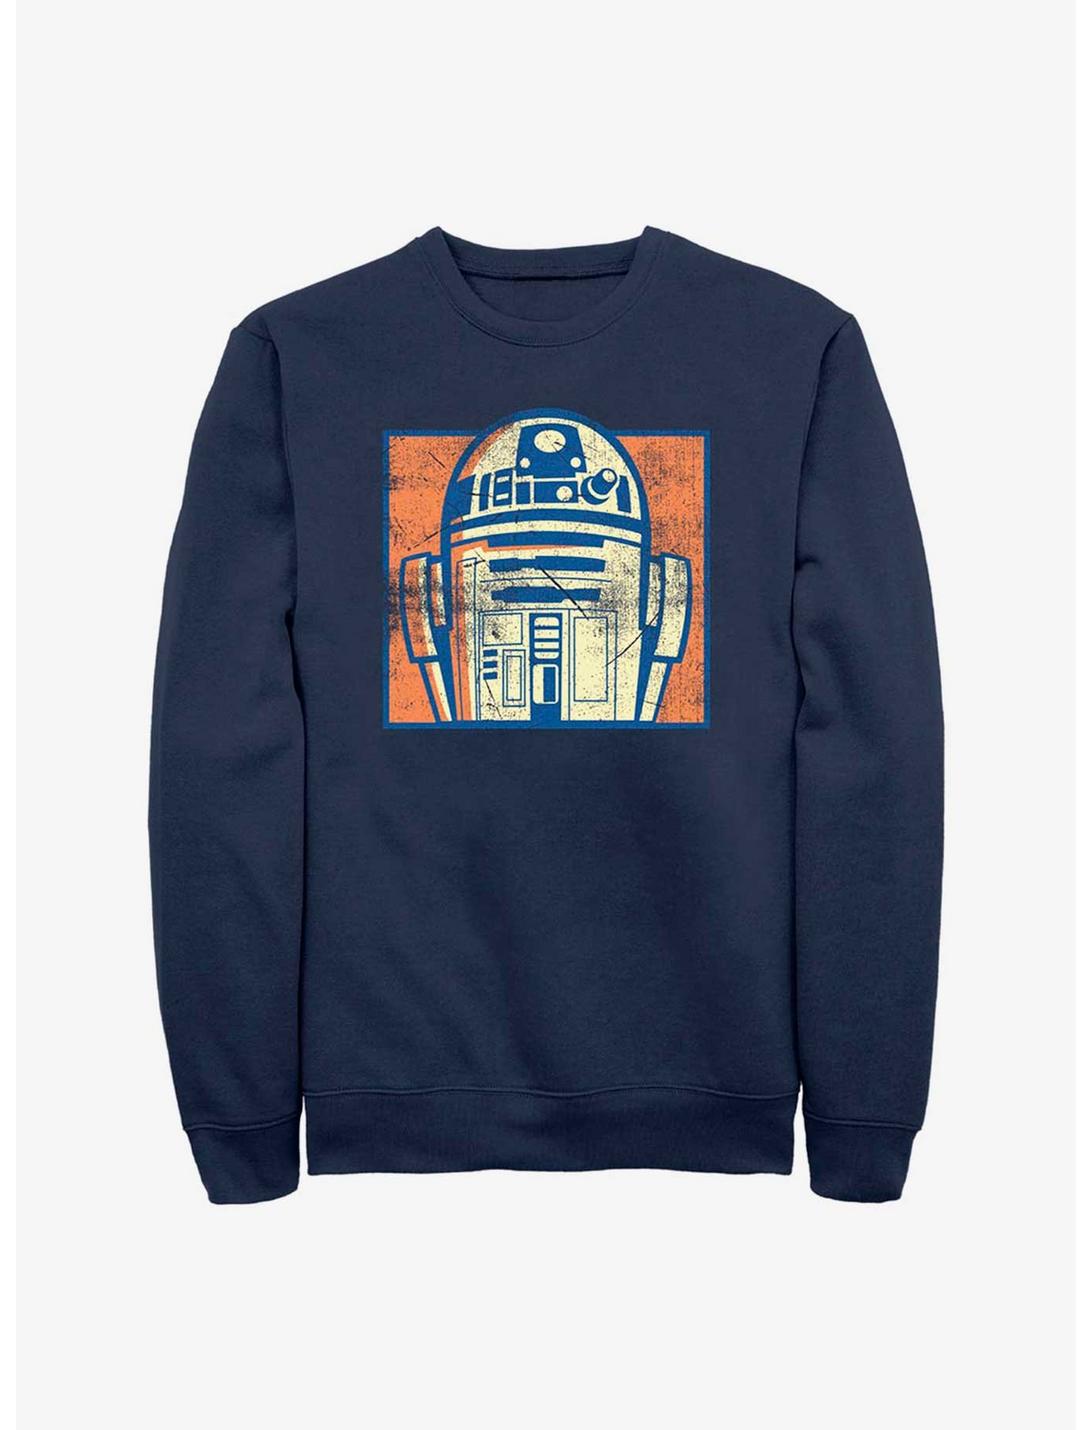 Star Wars R2-D2 Hero Sweatshirt, NAVY, hi-res